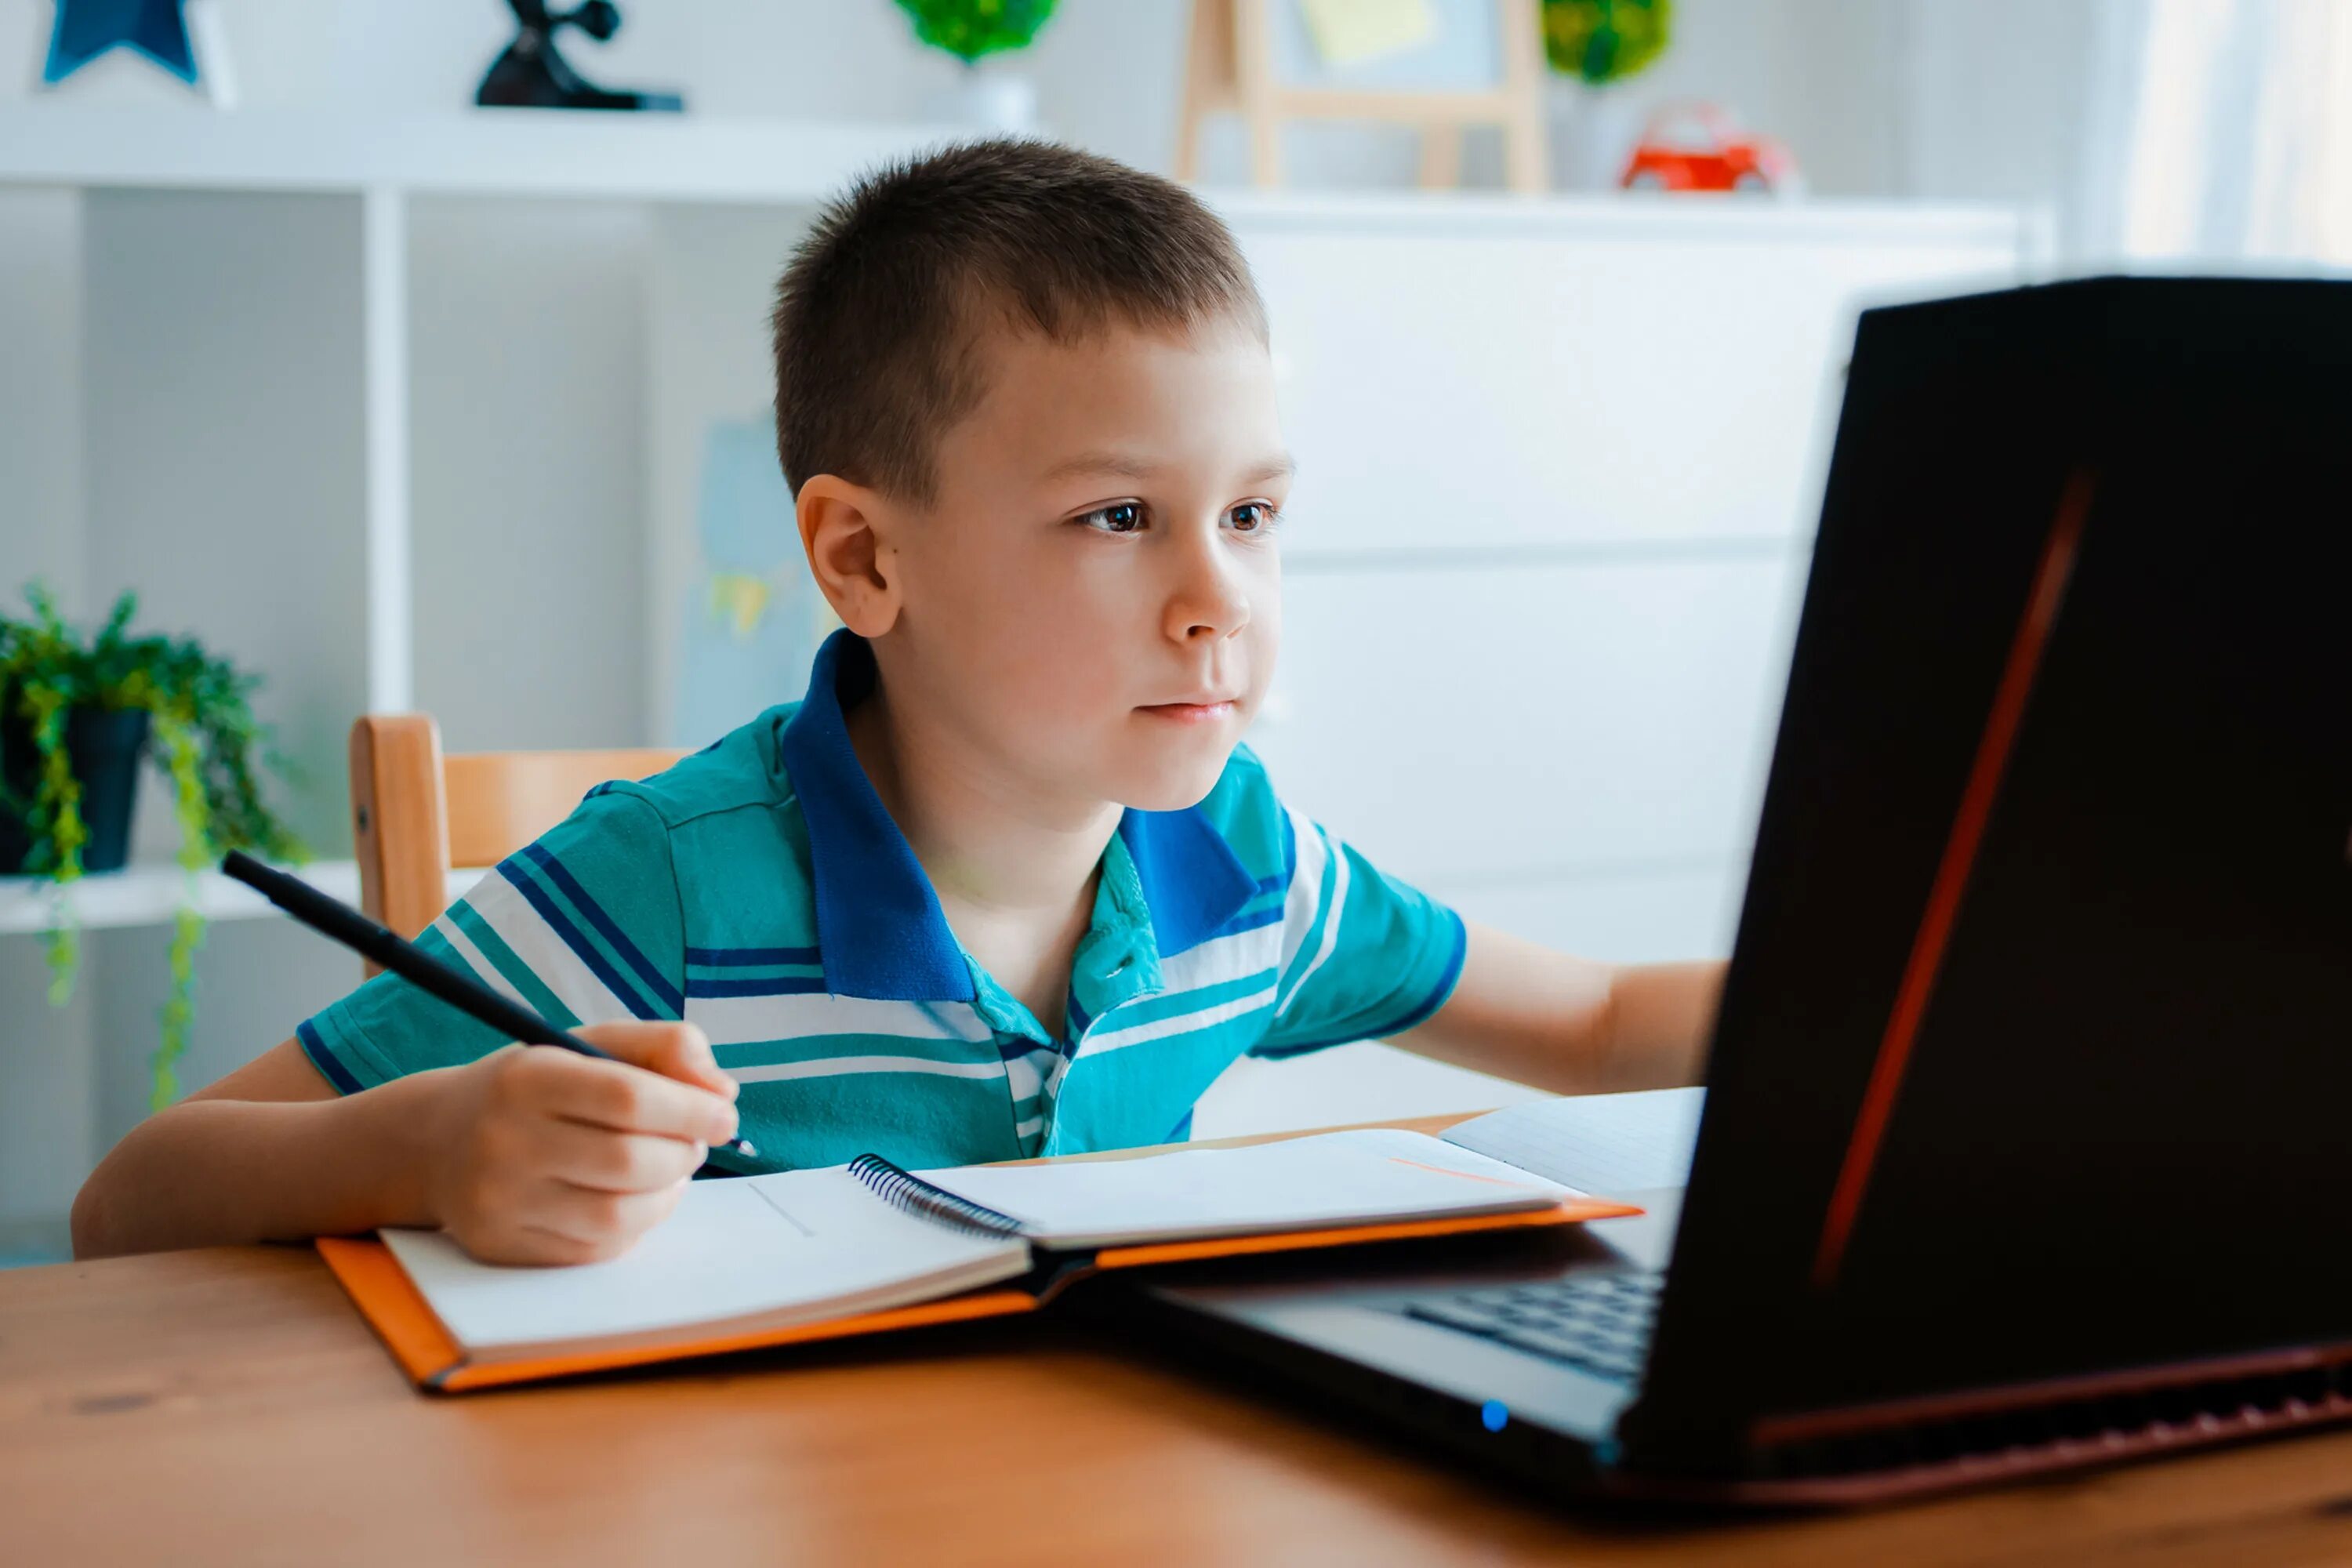 1 класс 1 ученик 1 компьютер. Ребенок за компьютером. Дети школьники. Ученик. Компьютер для школьника.